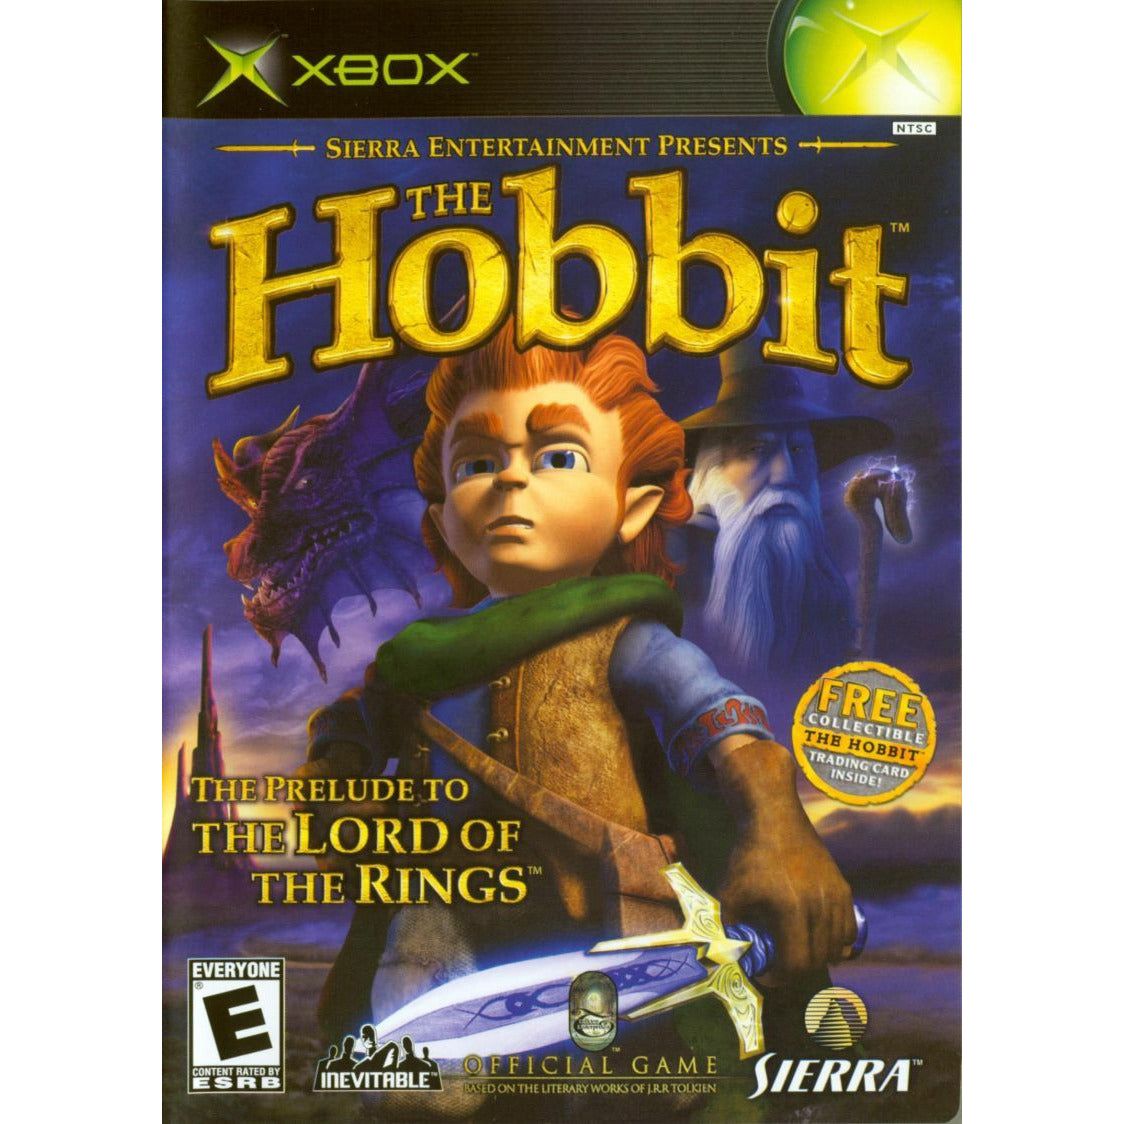 XBOX - The Hobbit